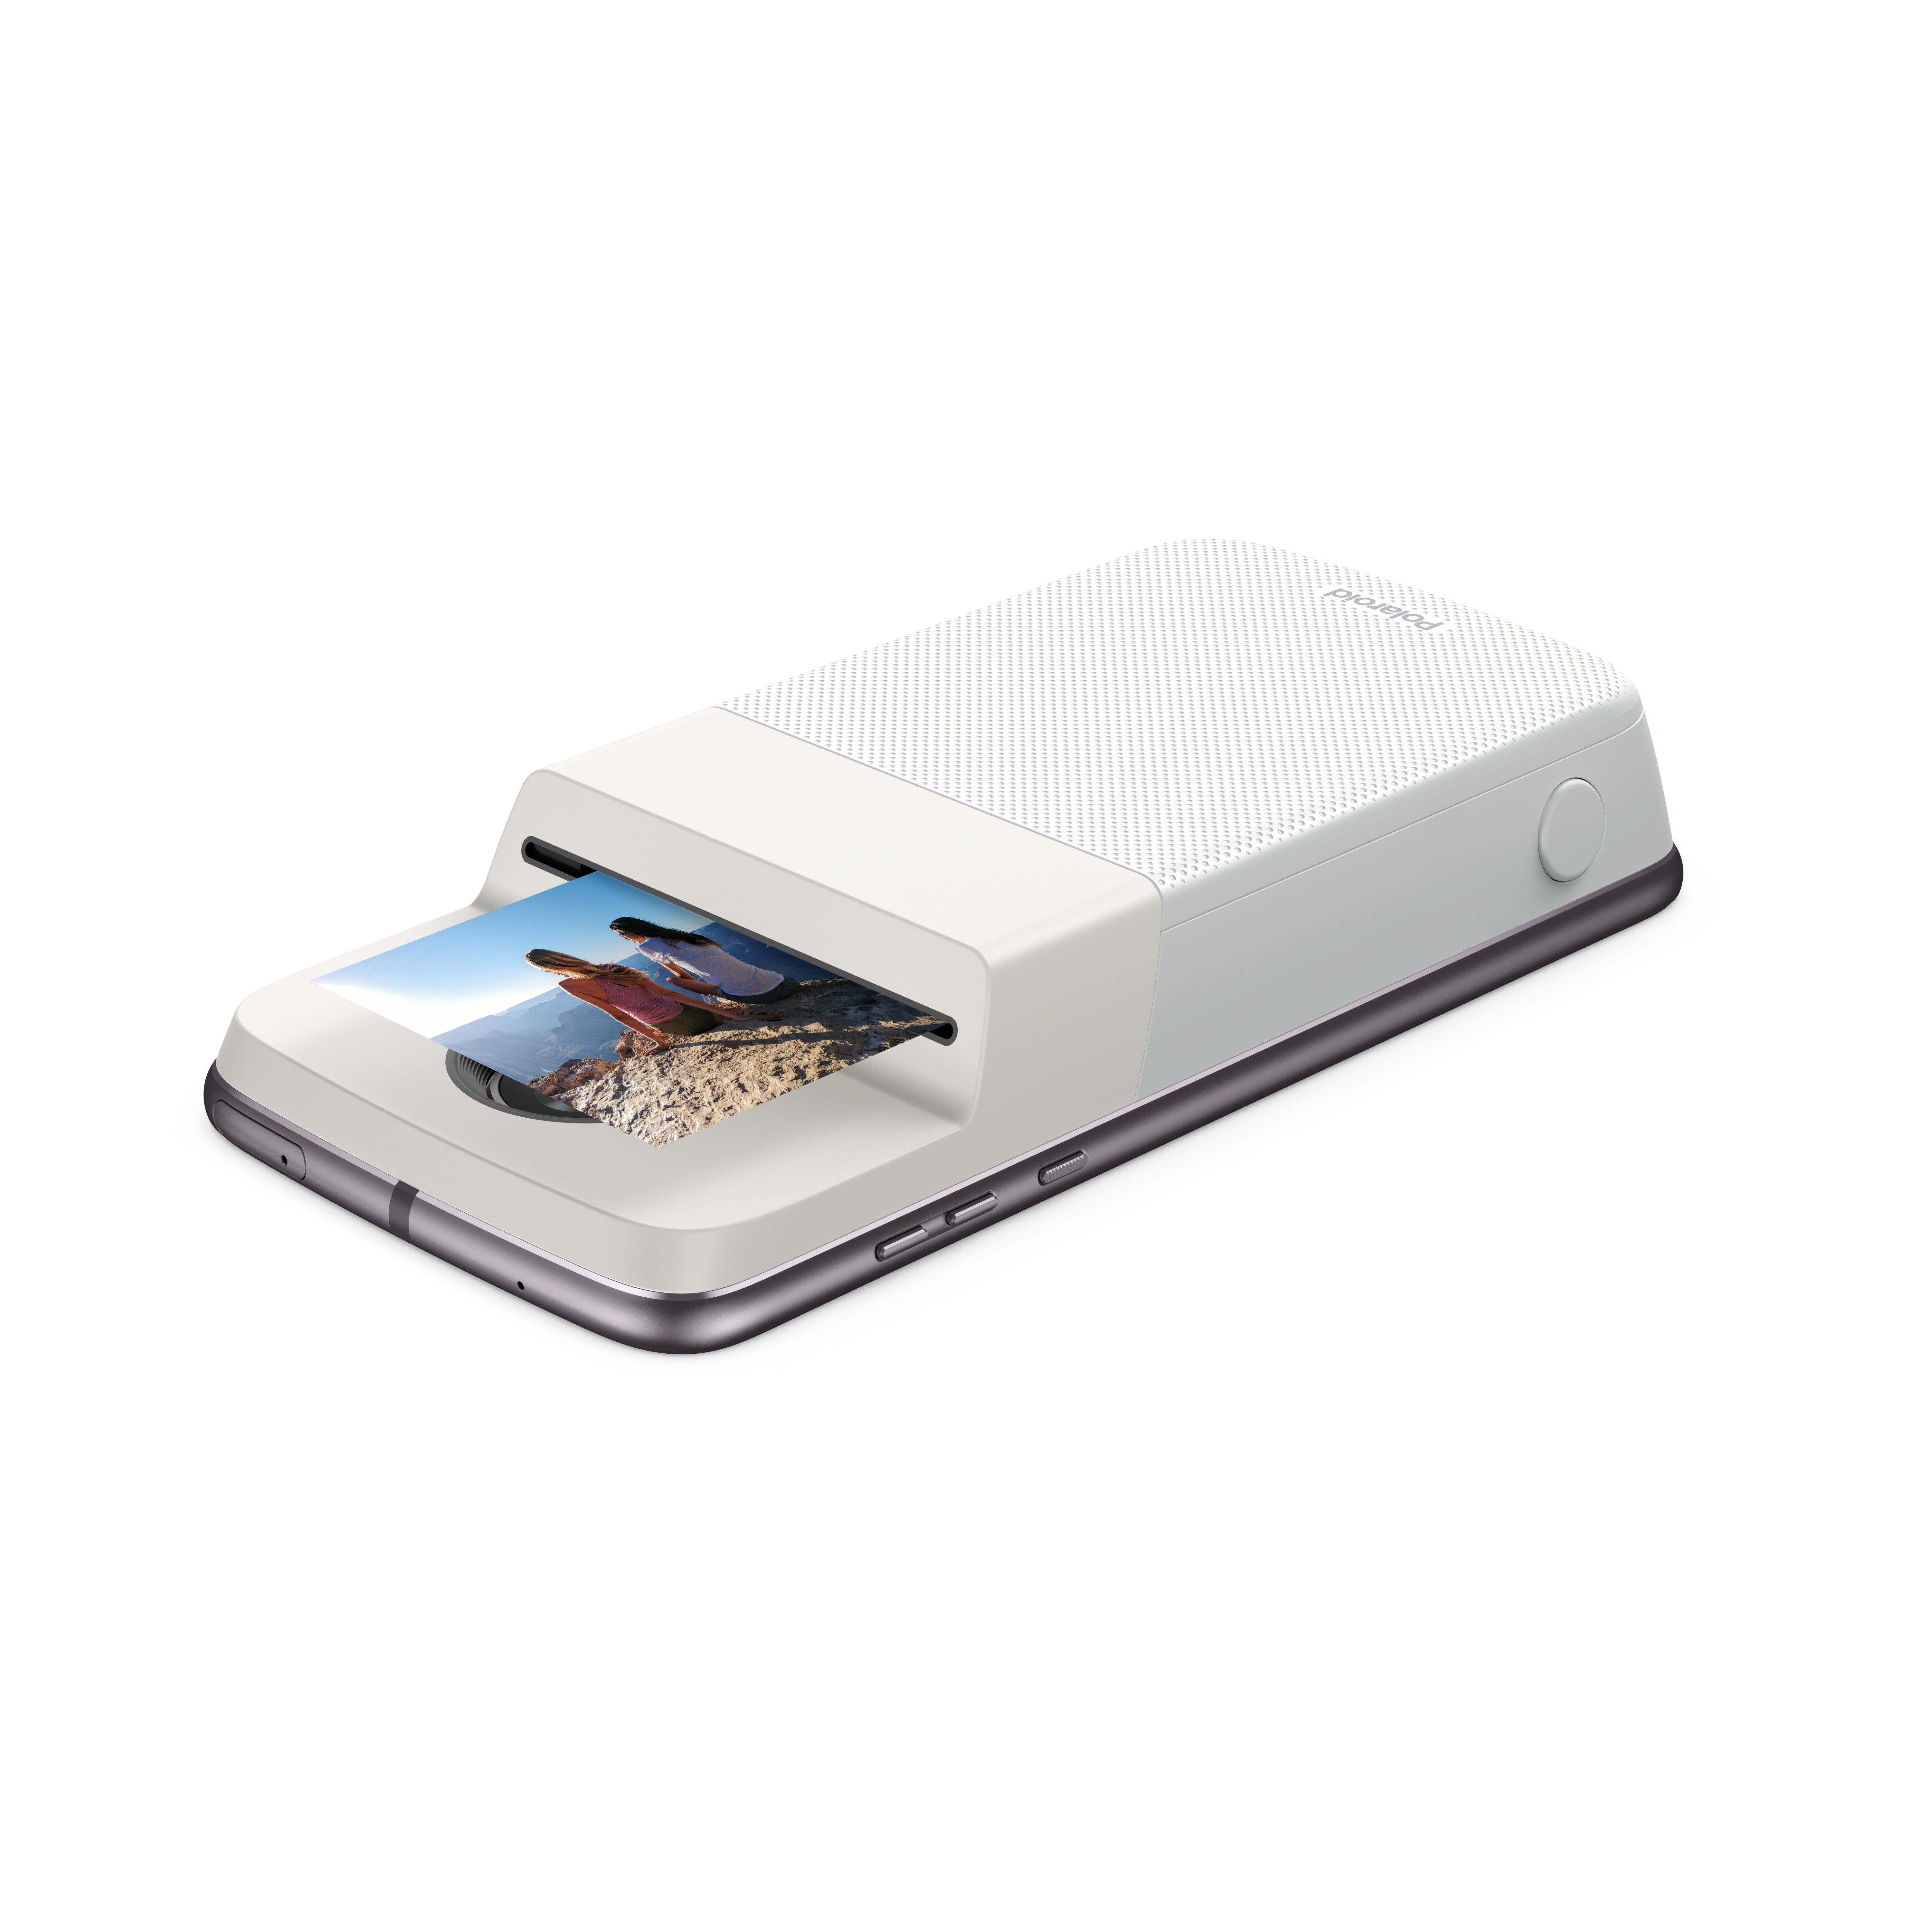 Impressora Polaroid Insta-Share imprimindo uma foto 2 por 3